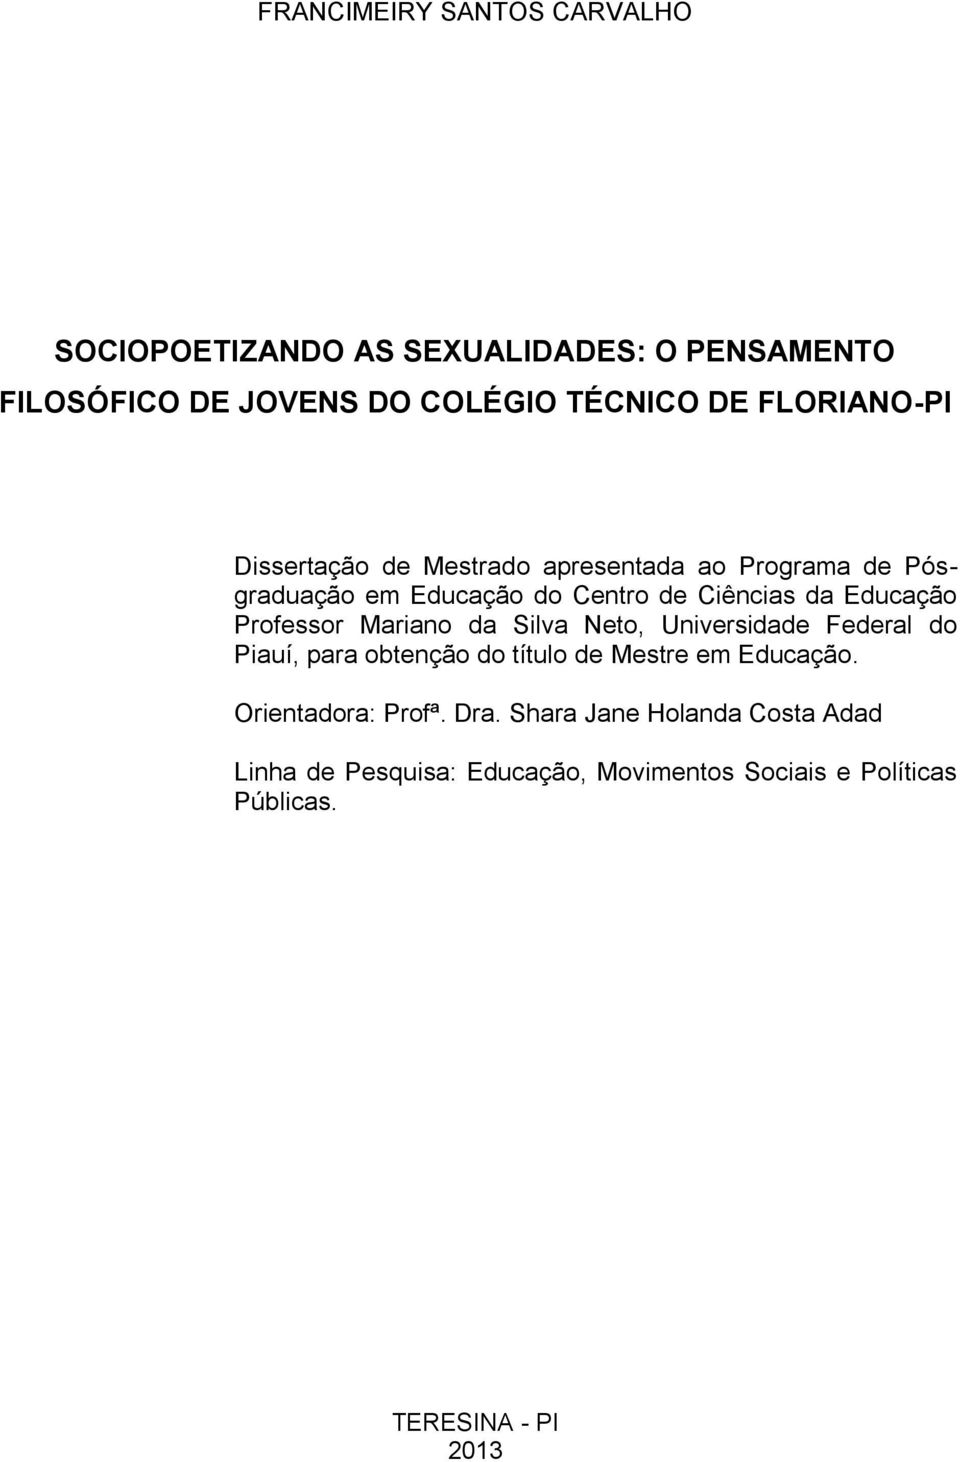 Professor Mariano da Silva Neto, Universidade Federal do Piauí, para obtenção do título de Mestre em Educação.